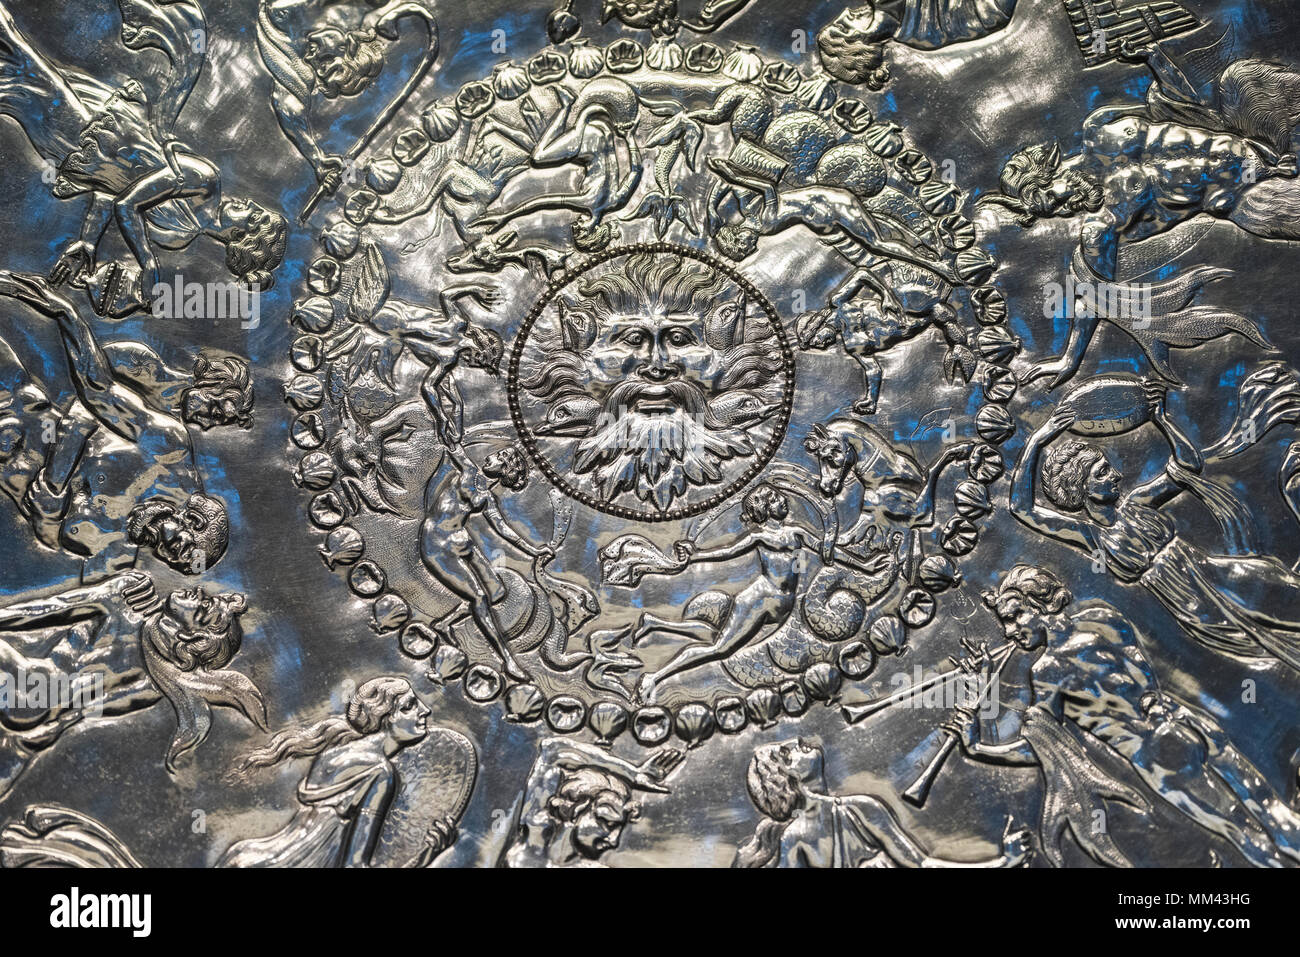 Londres. Inglaterra. Museo Británico. La Mildenhall gran plato, aka Neptuno o Oceanus plato, es un siglo IV D.C. Báquica Romana bandeja de plata, y es el Foto de stock